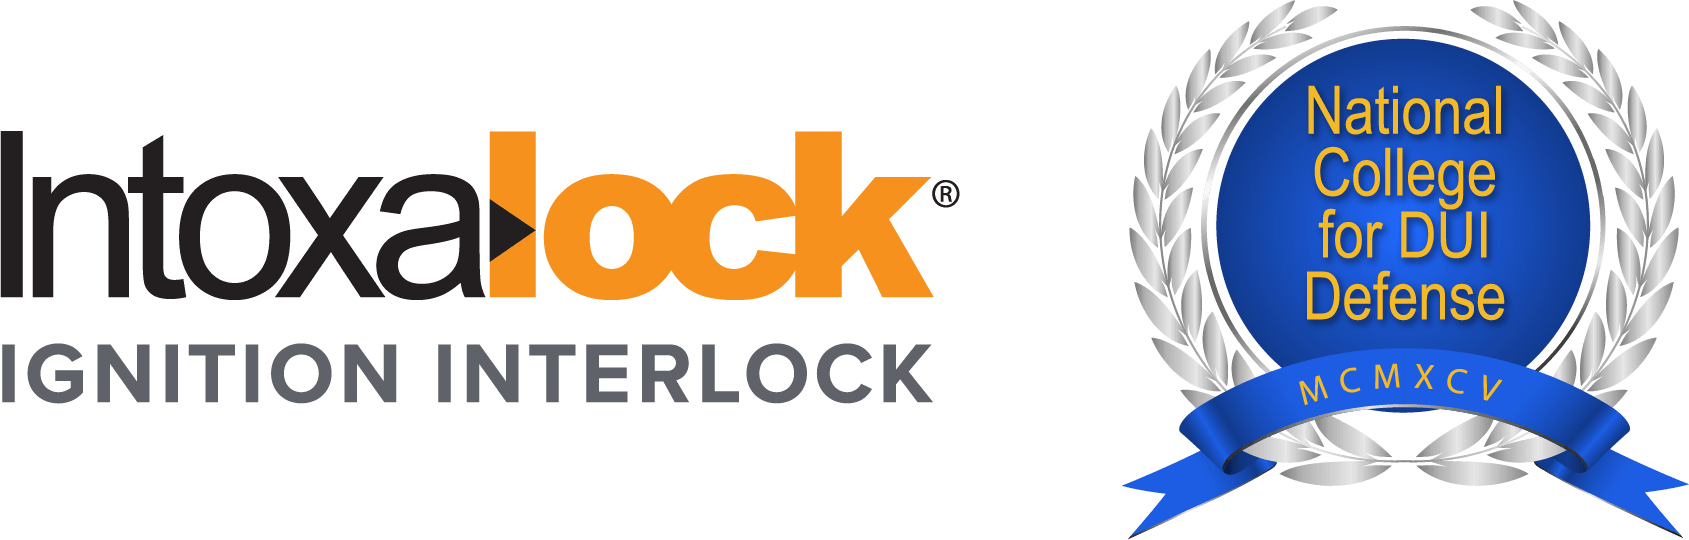 Intoxalock Logo